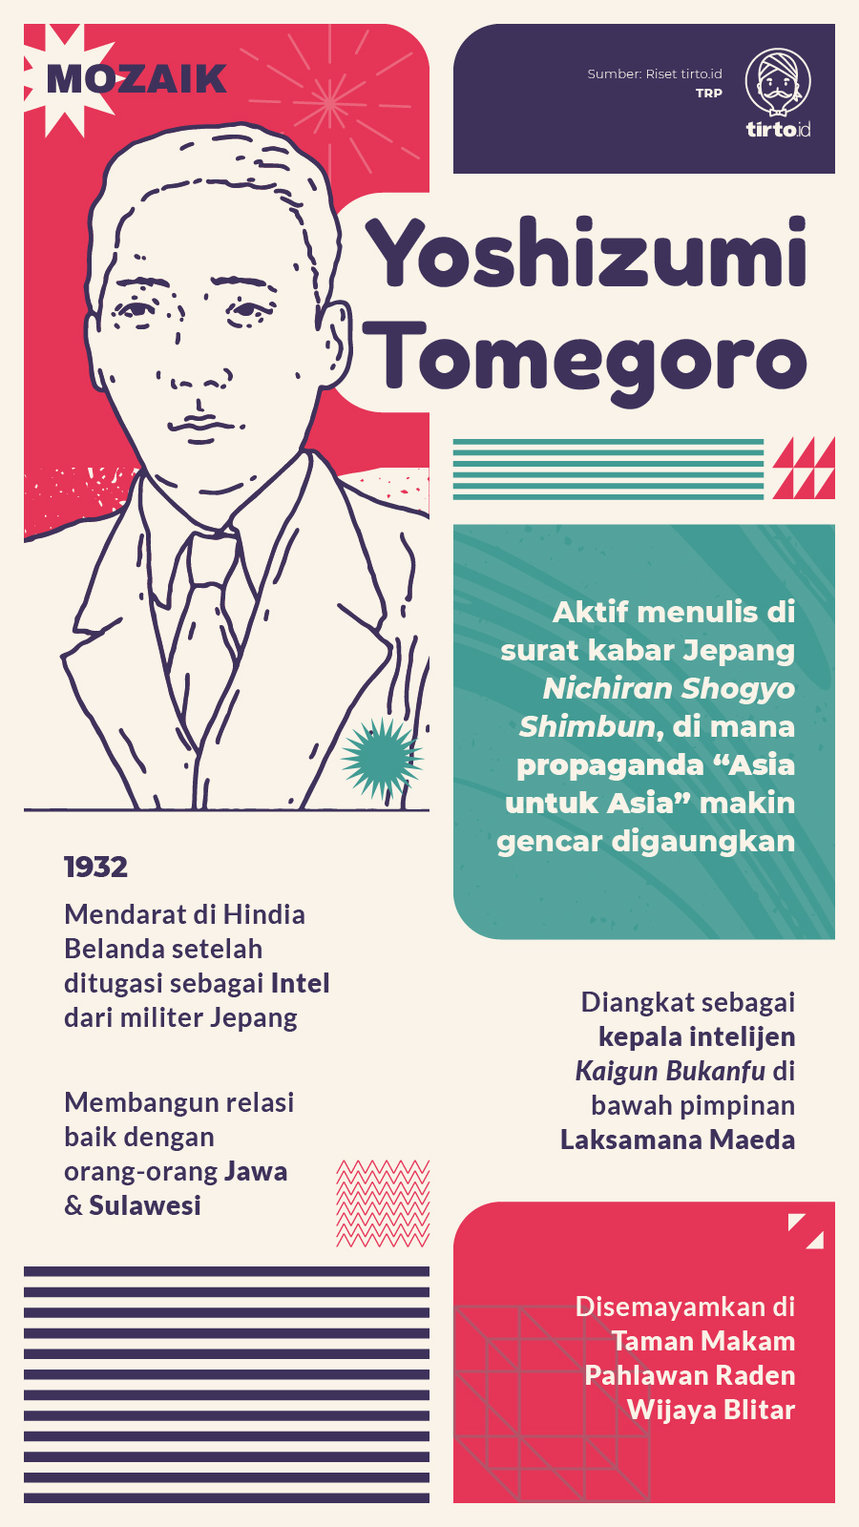 Infografik mozaik Yoshizuma Tomegoro